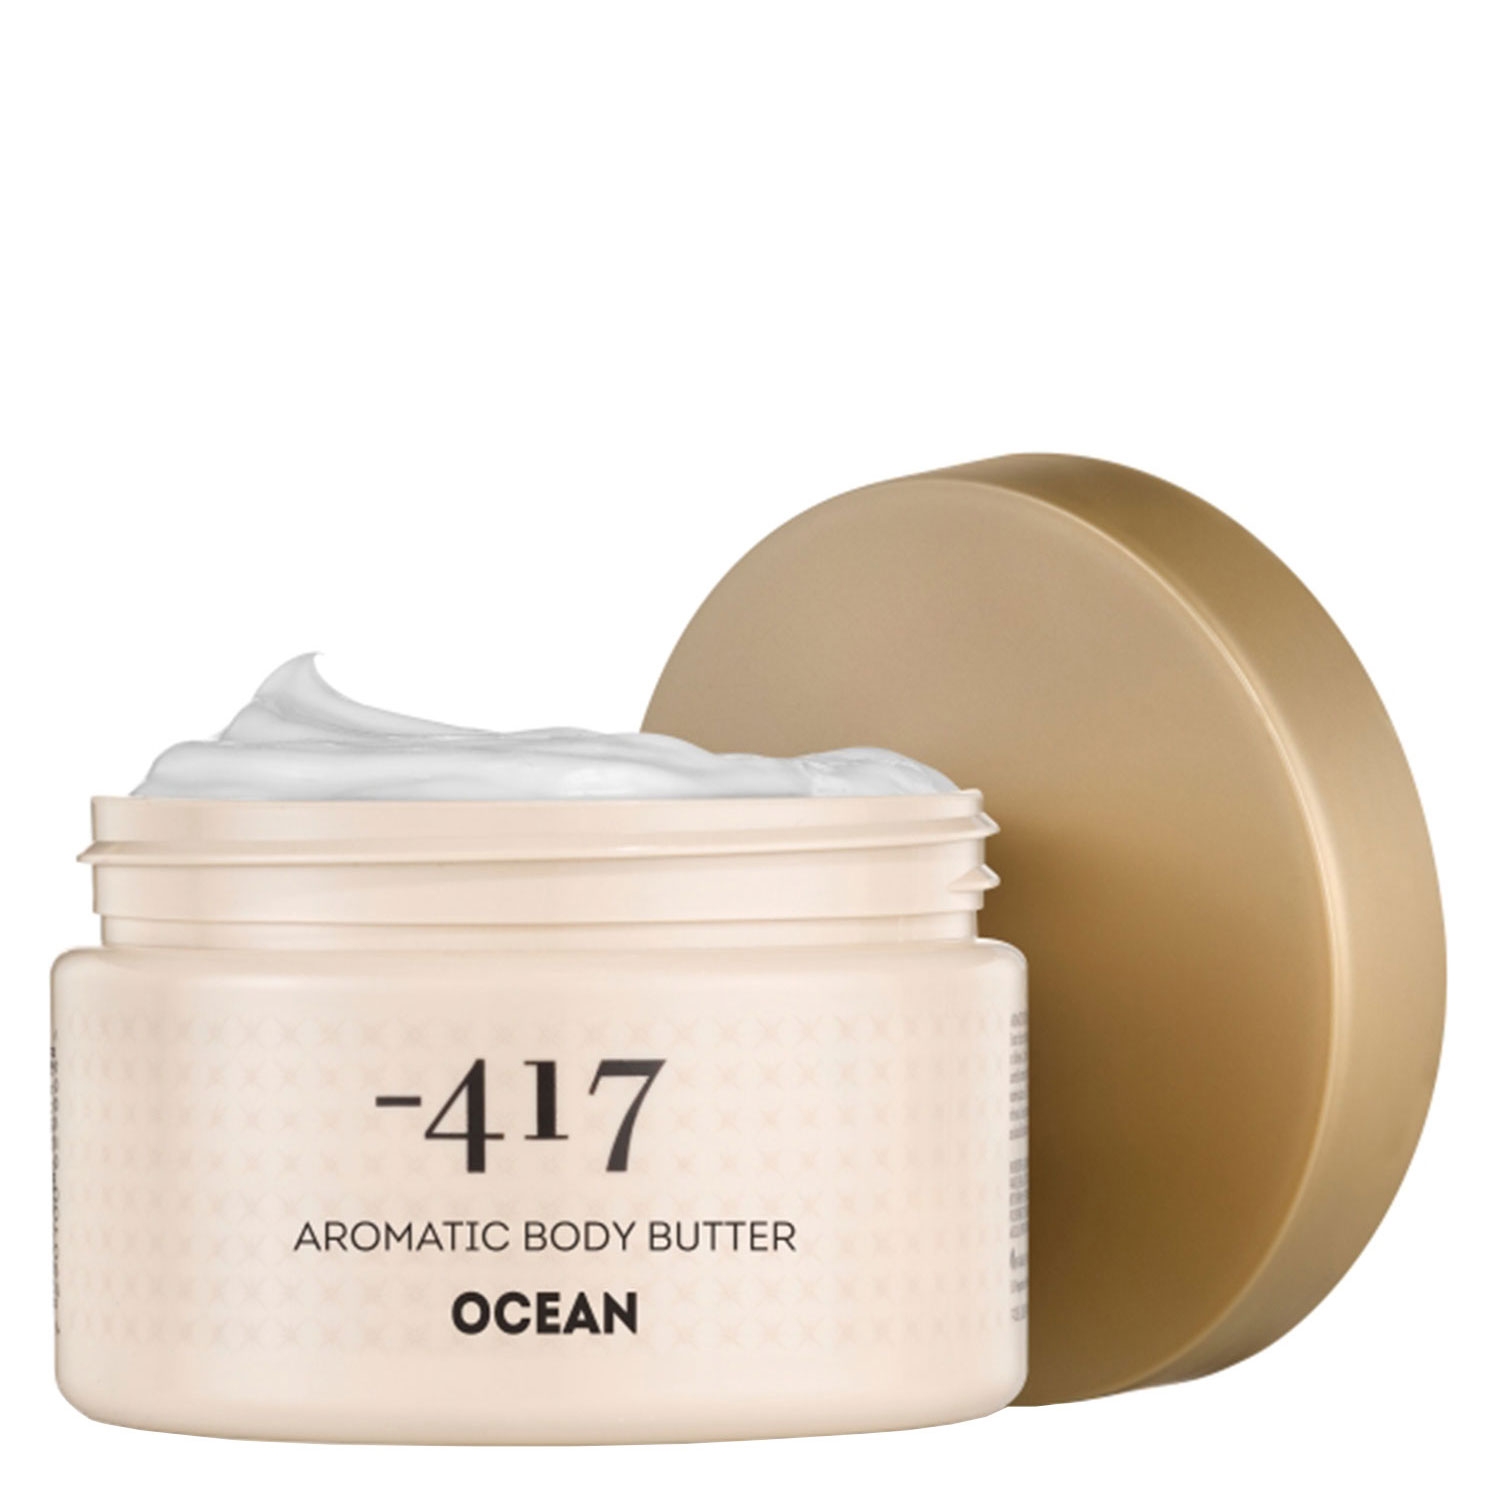 Produktbild von Minus 417 - Aromatic Body Butter Ocean